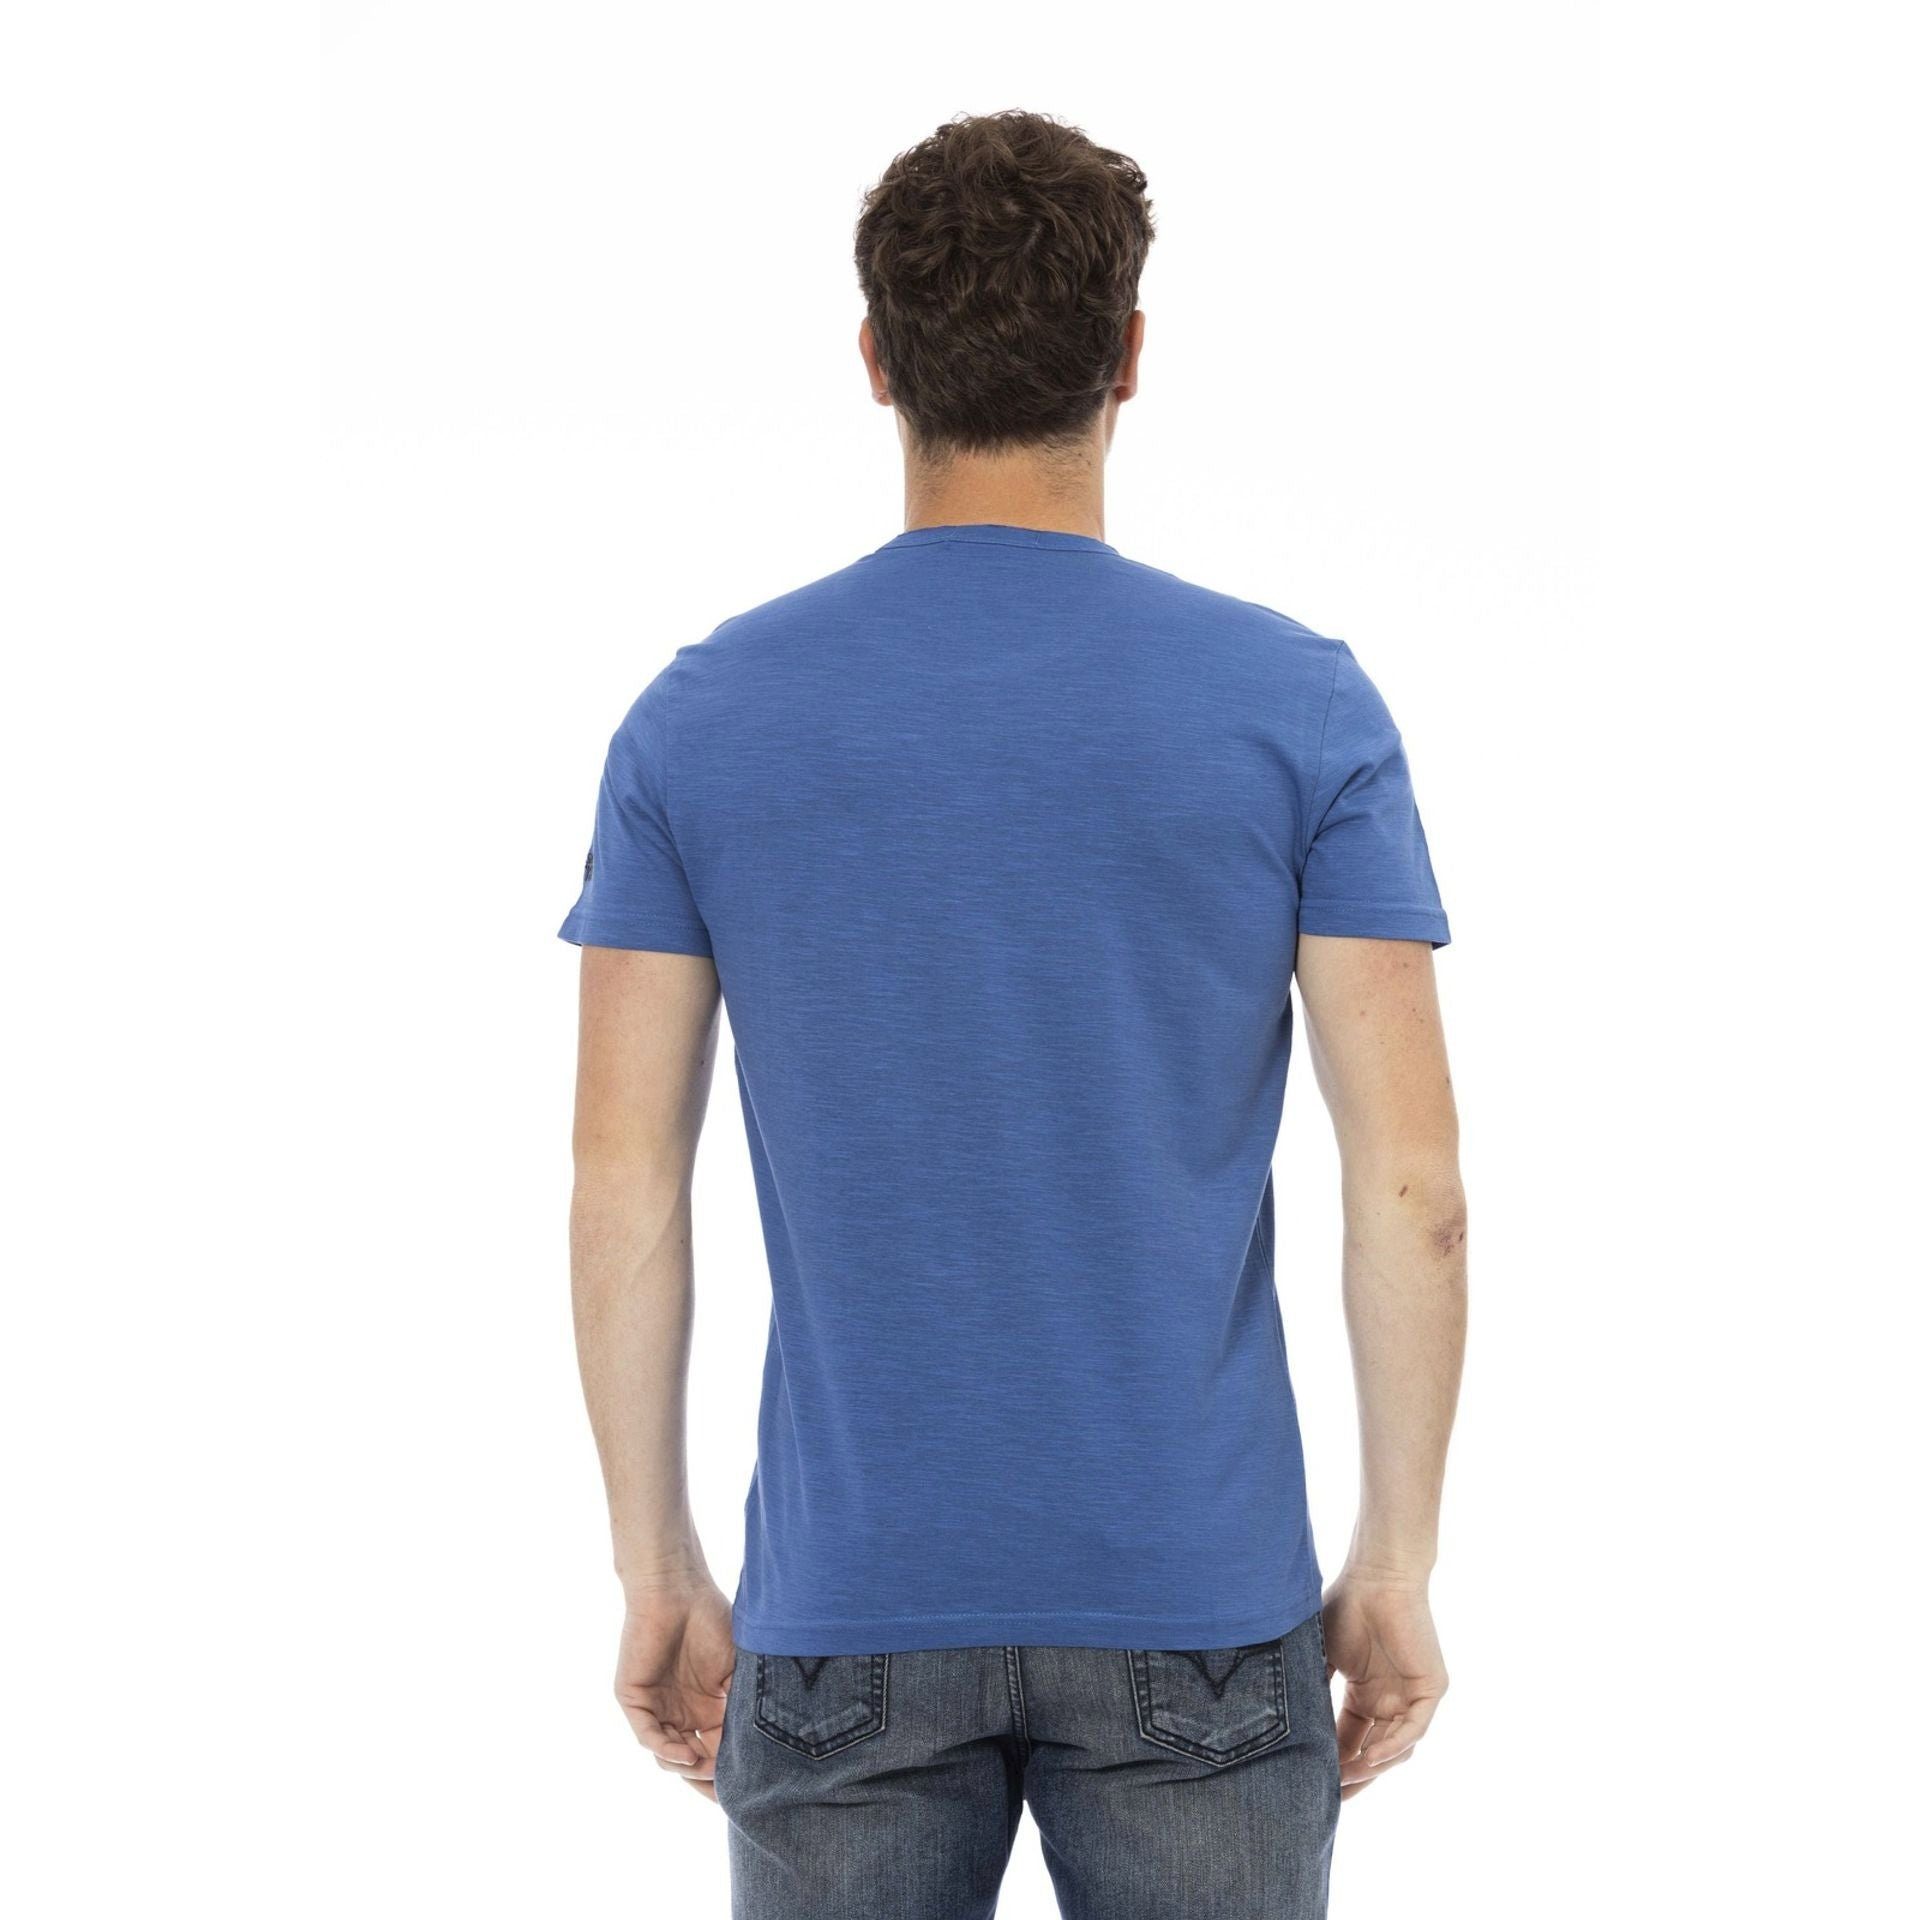 T-Shirt Note aber Trussardi Action Es Logo-Muster stilvolle subtile, aus, Trussardi Blau zeichnet sich verleiht eine T-Shirts, das das durch